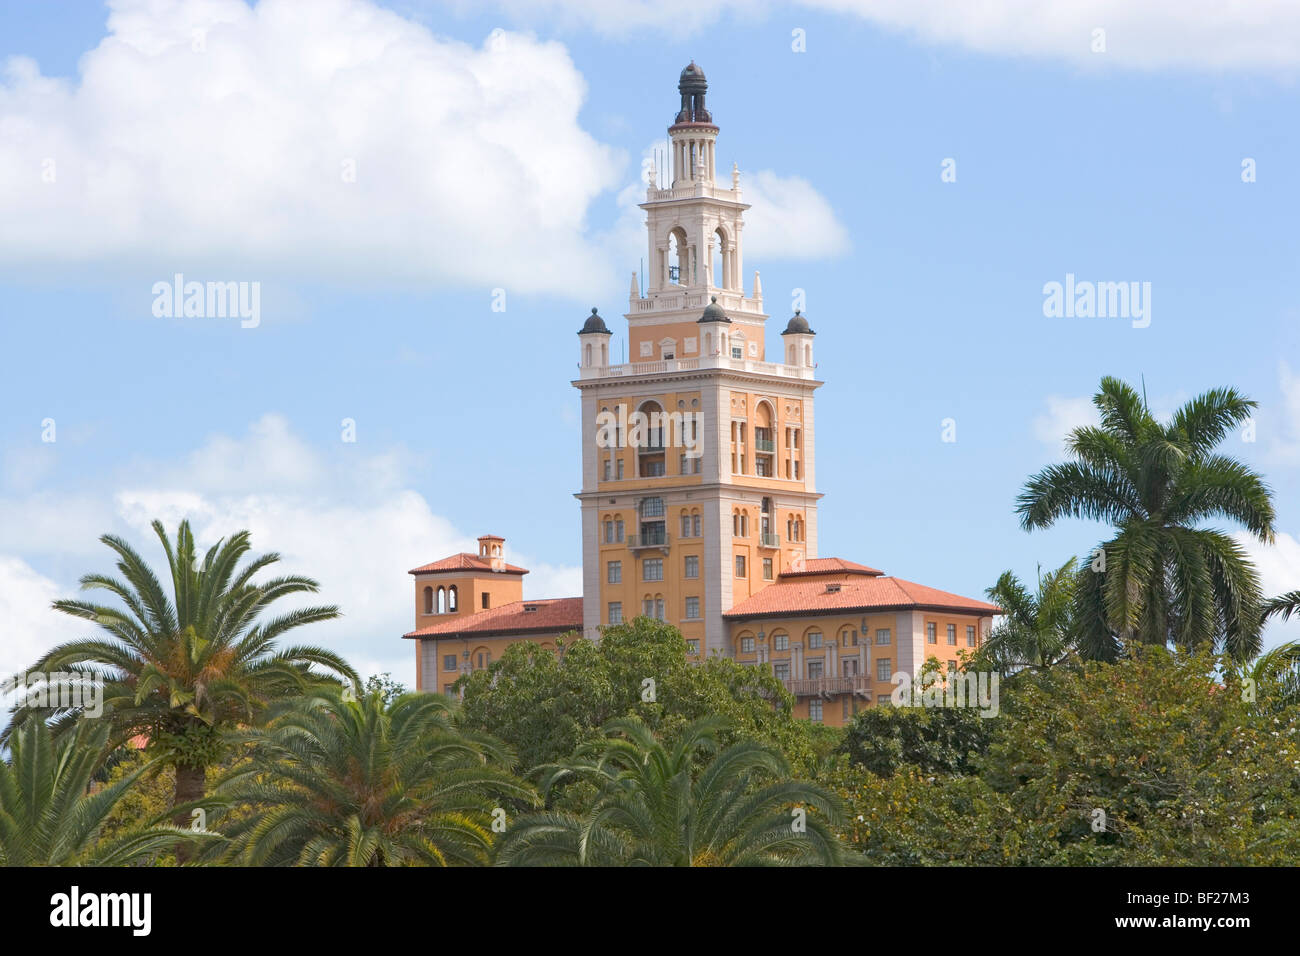 La torre di Biltmore Hotel sopra tree tops, Miami, Florida, Stati Uniti d'America Foto Stock